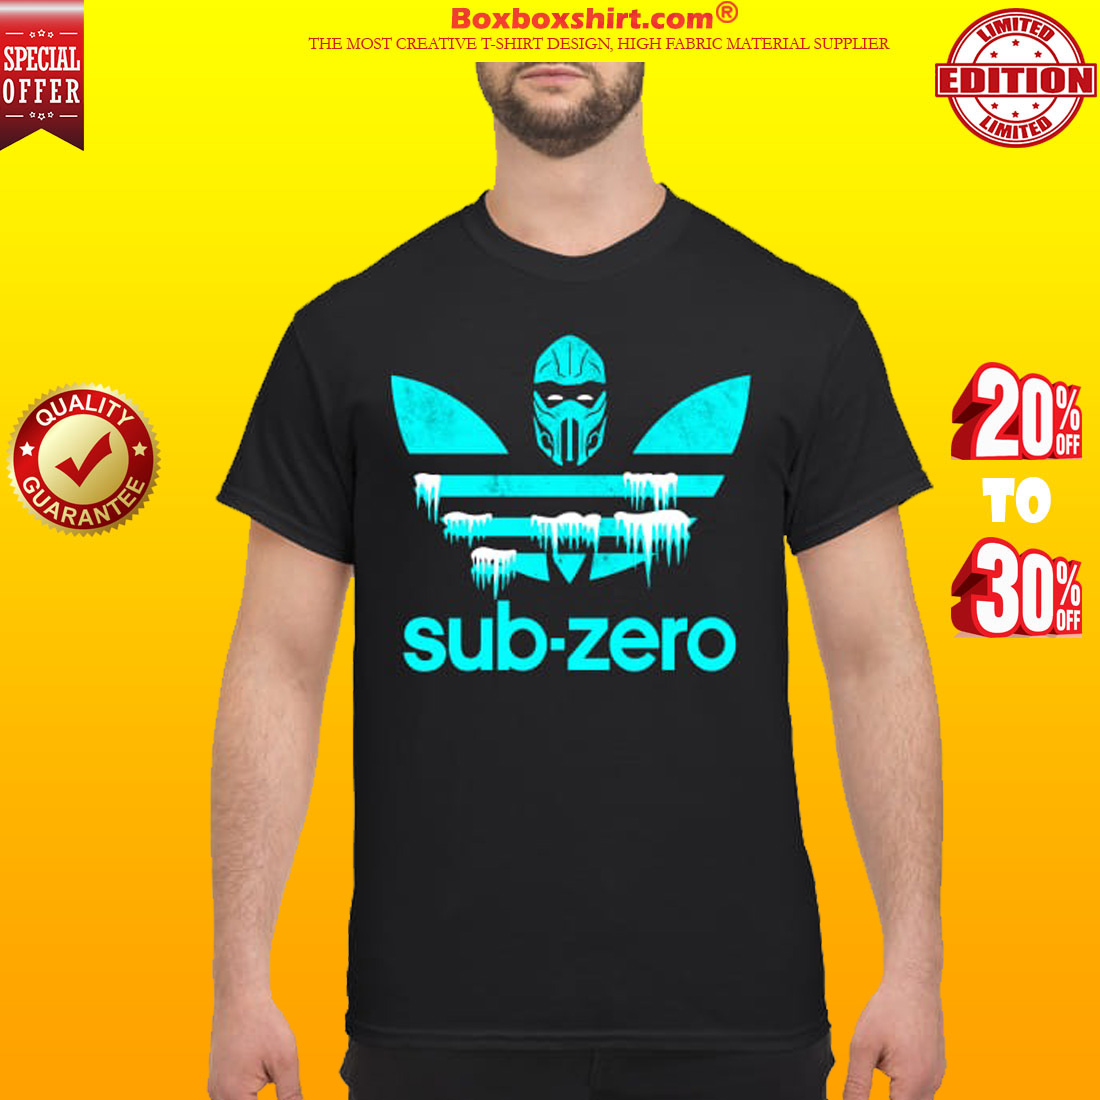 Sub zero adidas classic shirt